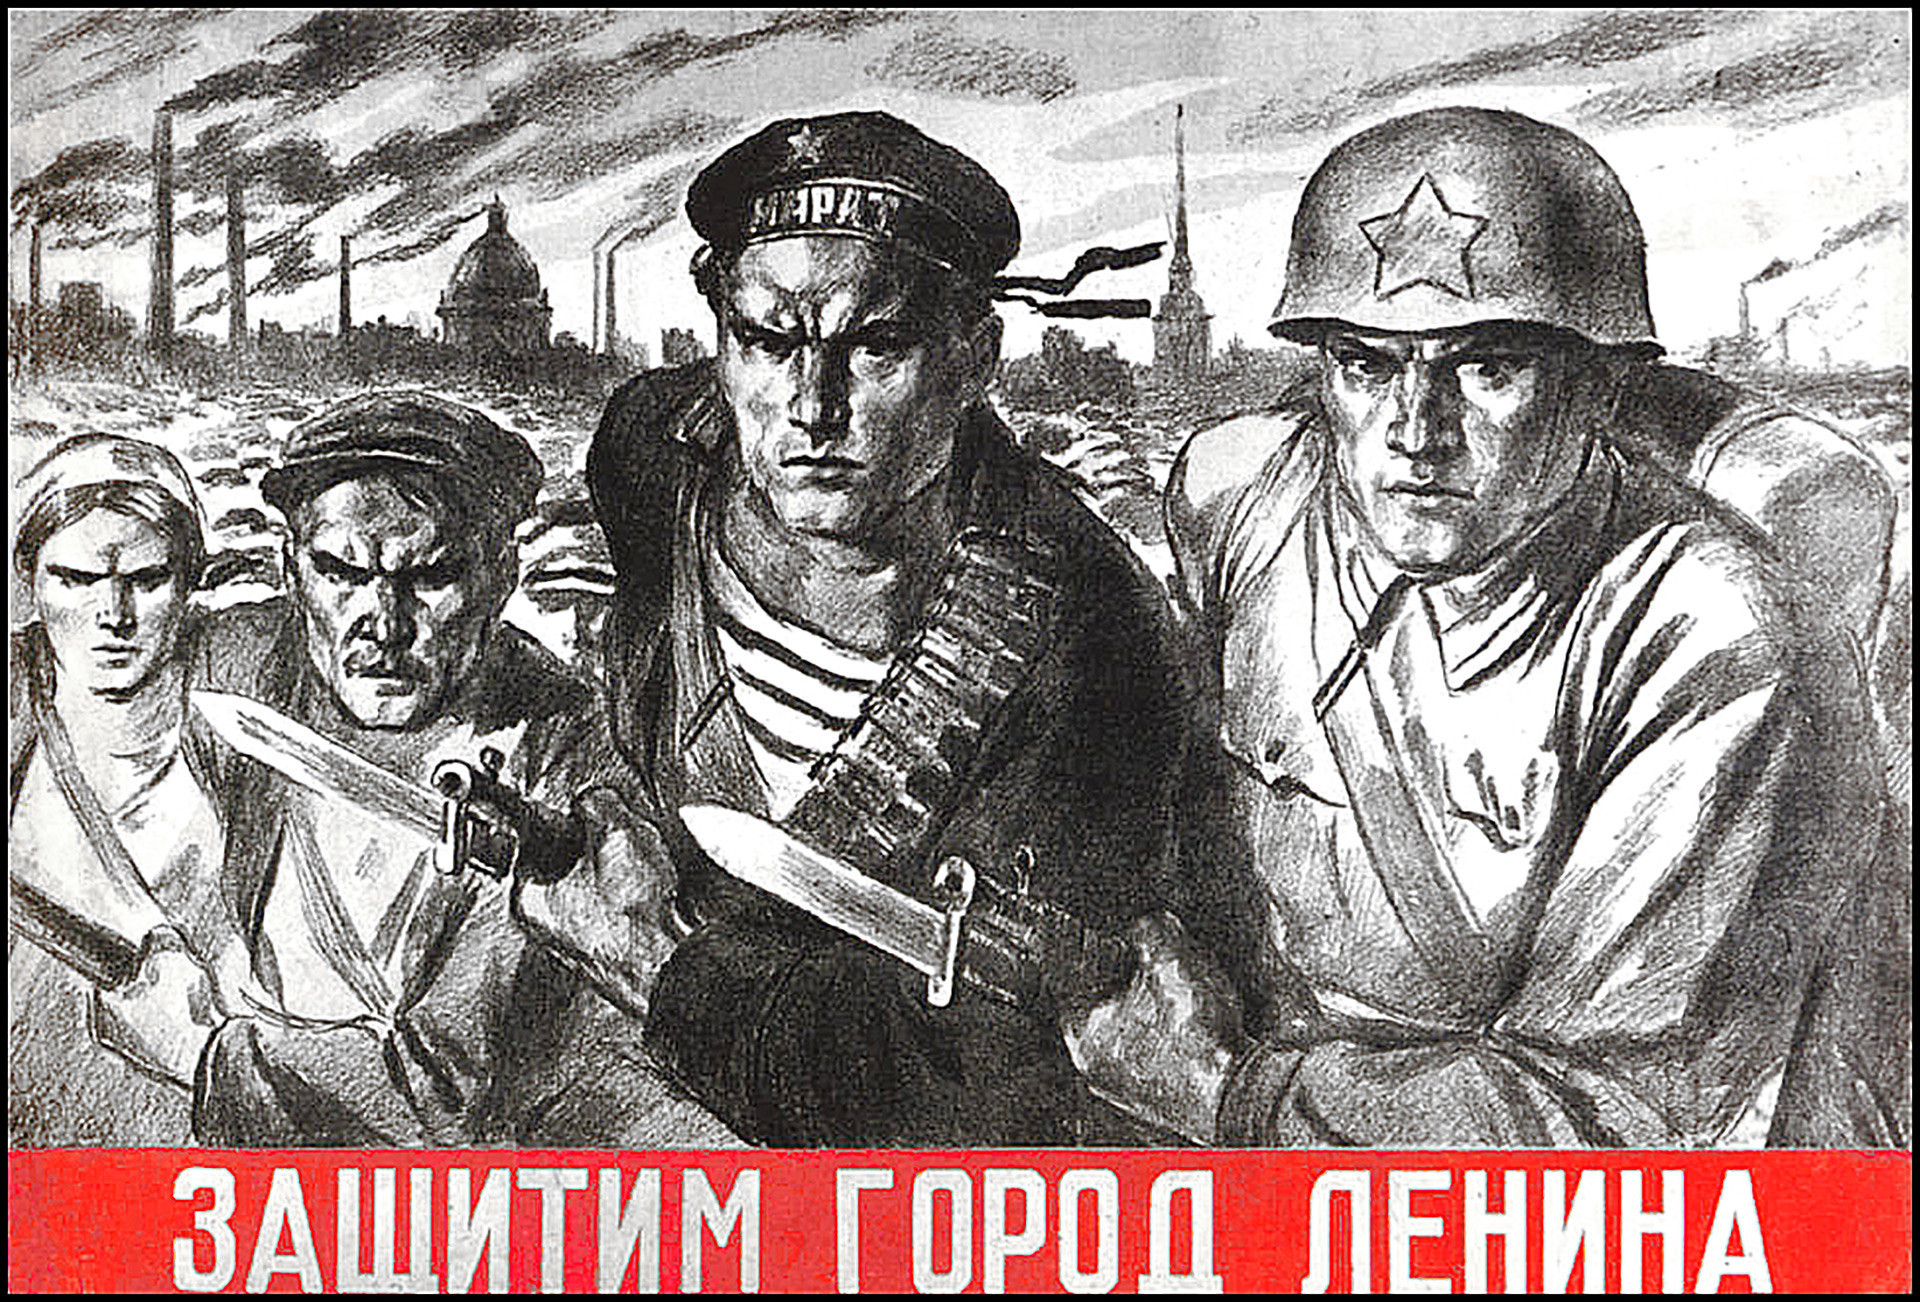 « Nous défendrons la ville de Lénine ! » [Léningrad : appellation soviétique de la ville de Saint-Pétersbourg]